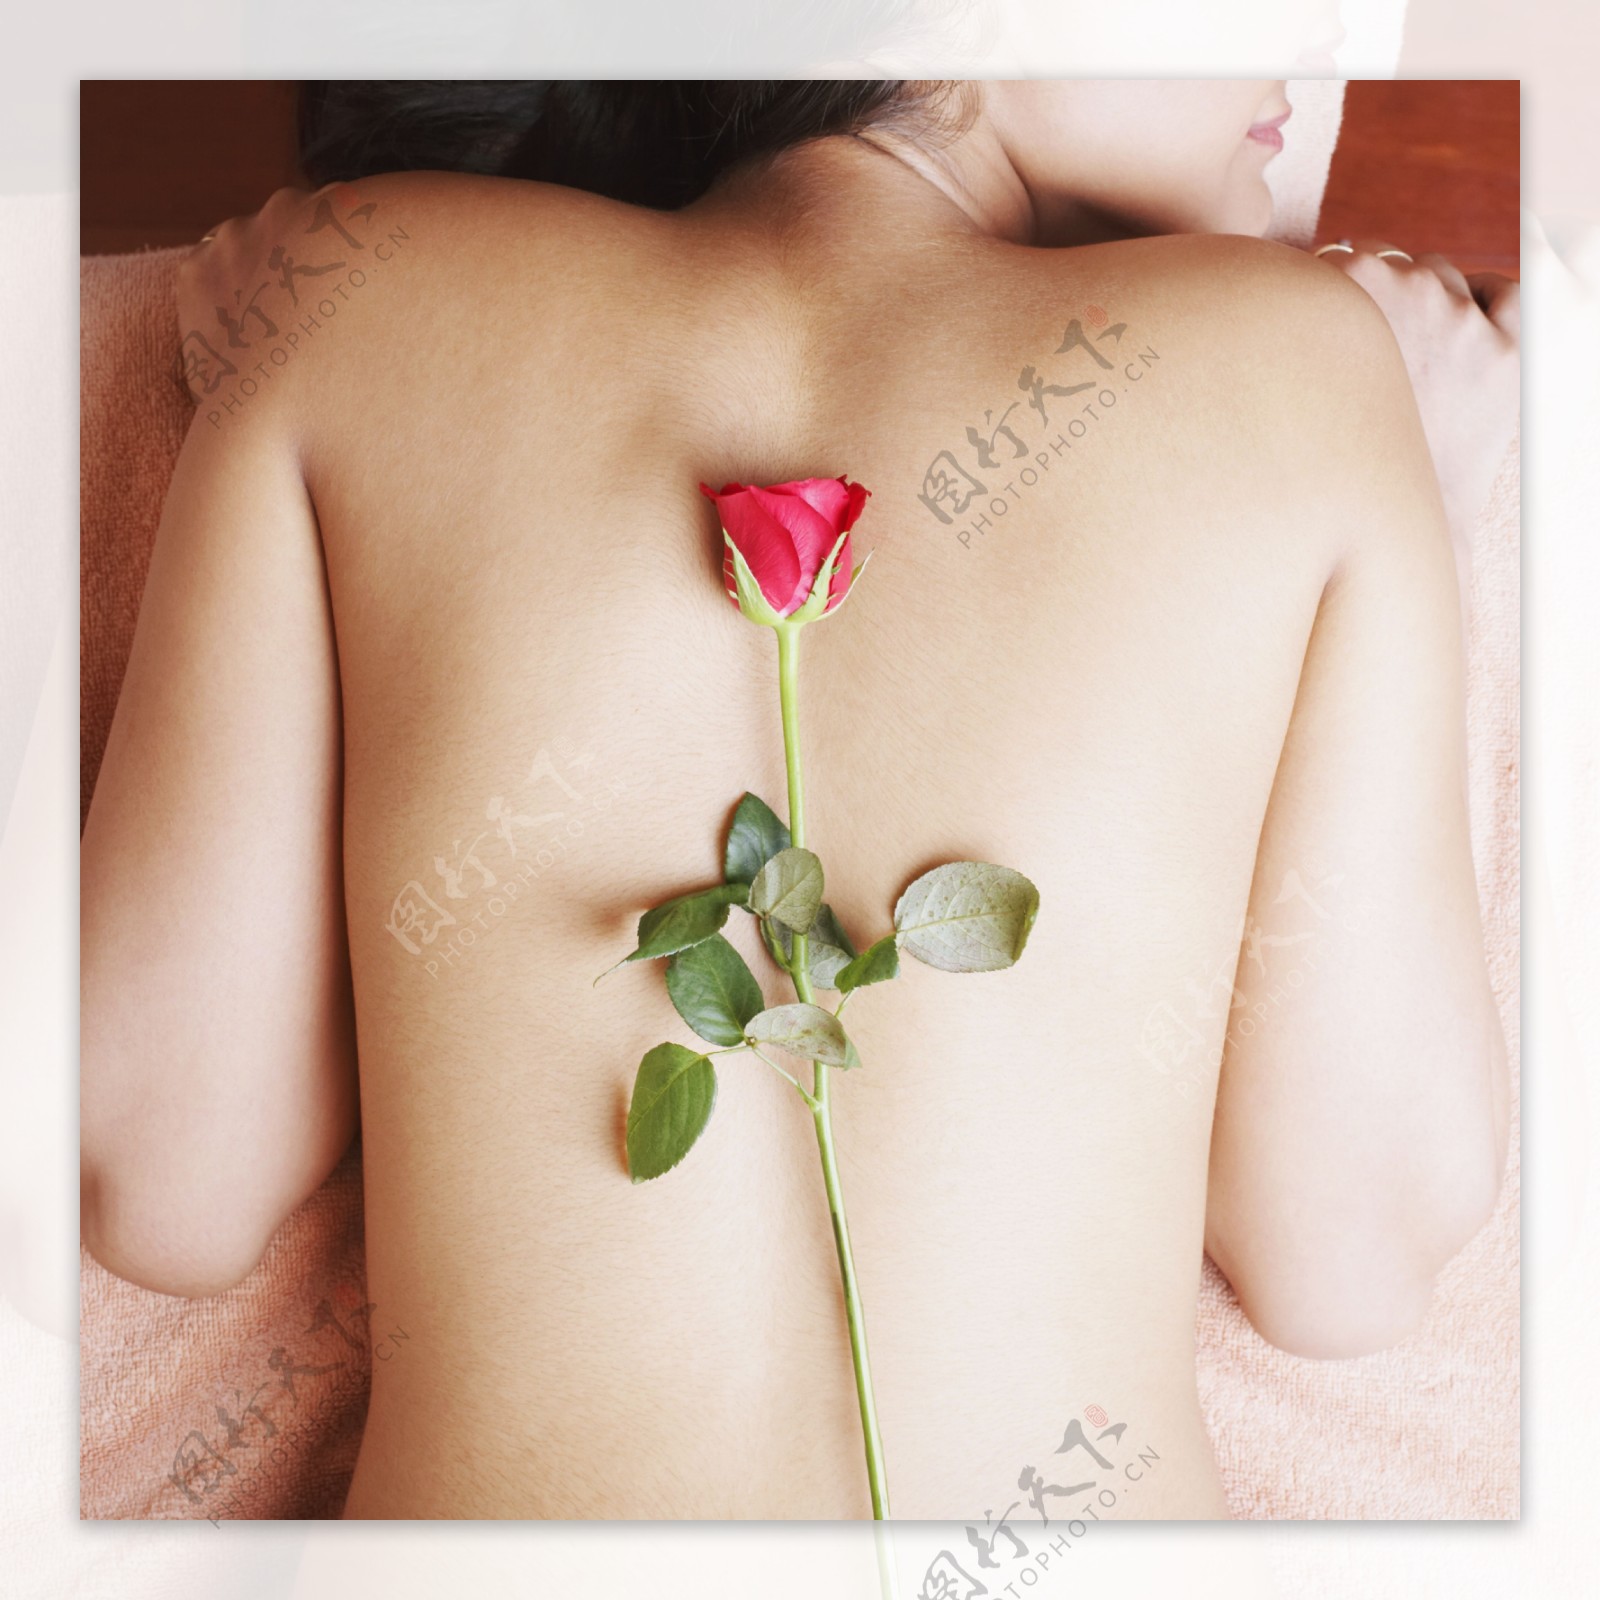 背部放玫瑰花的外国性感美女图片